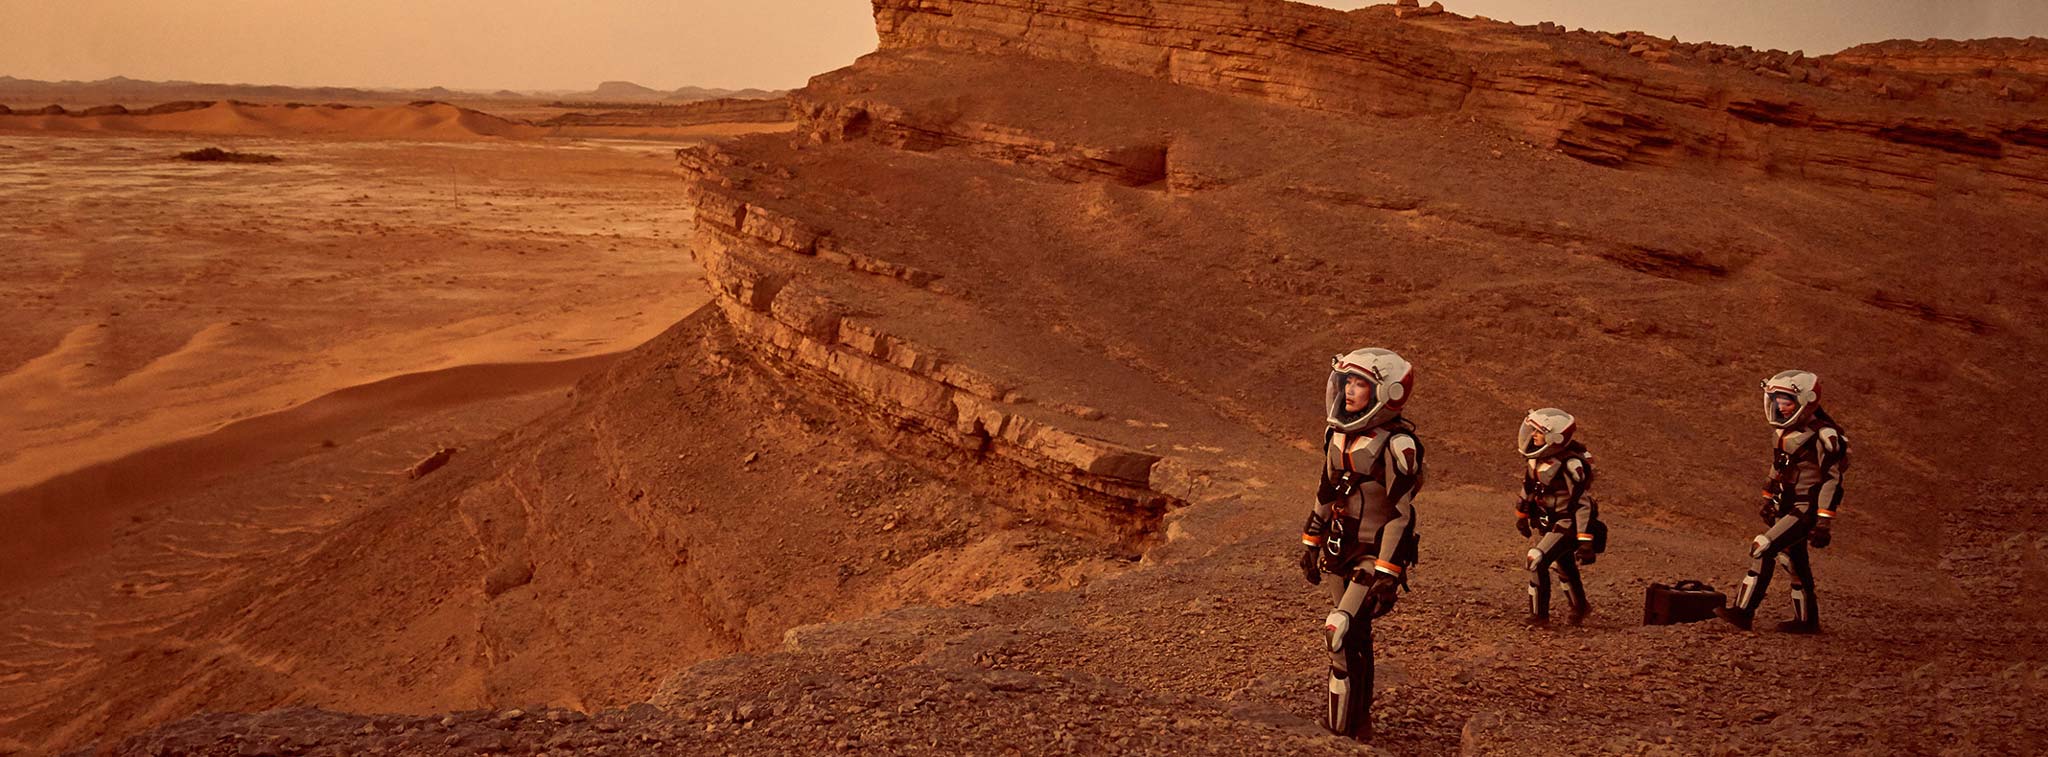 Chính thức: NASA sẽ đưa con người lên sao Hỏa vào năm 2033, kế hoạch đã bắt đầu từ hôm nay